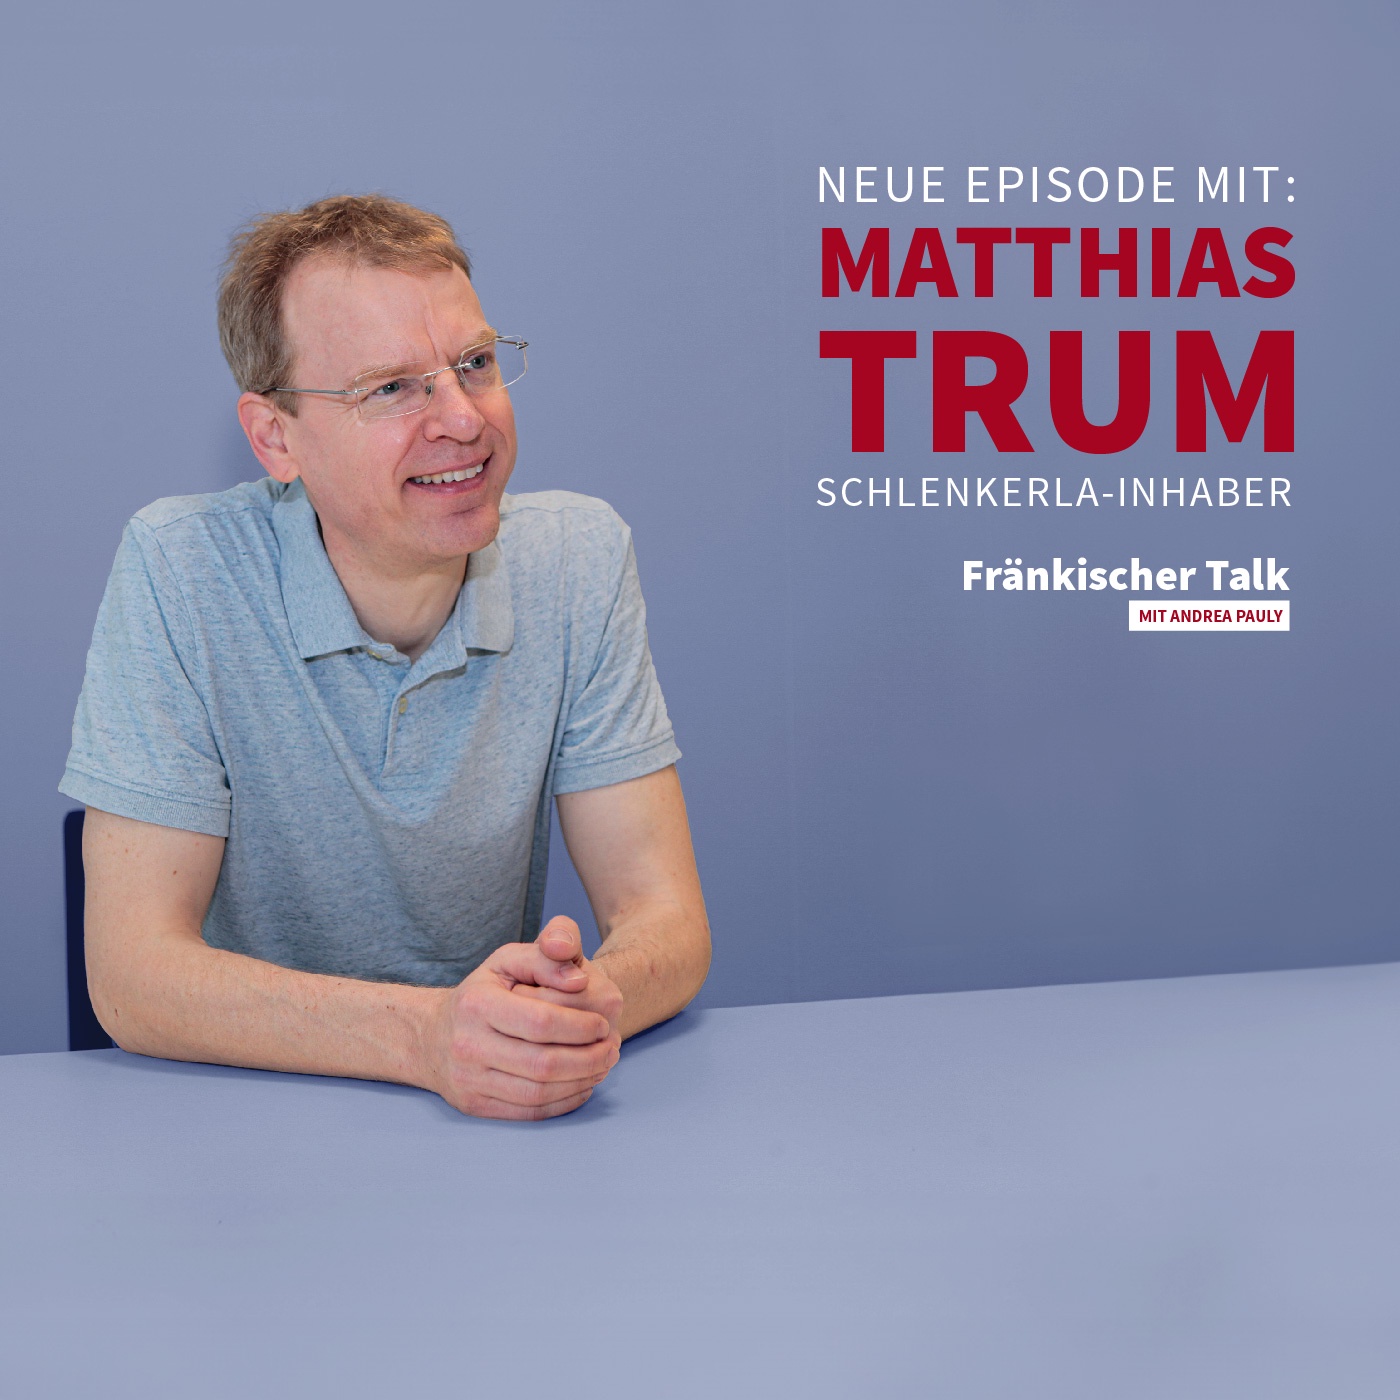 Matthias Trum, warum ist das Schlenkerla so ein Kult?